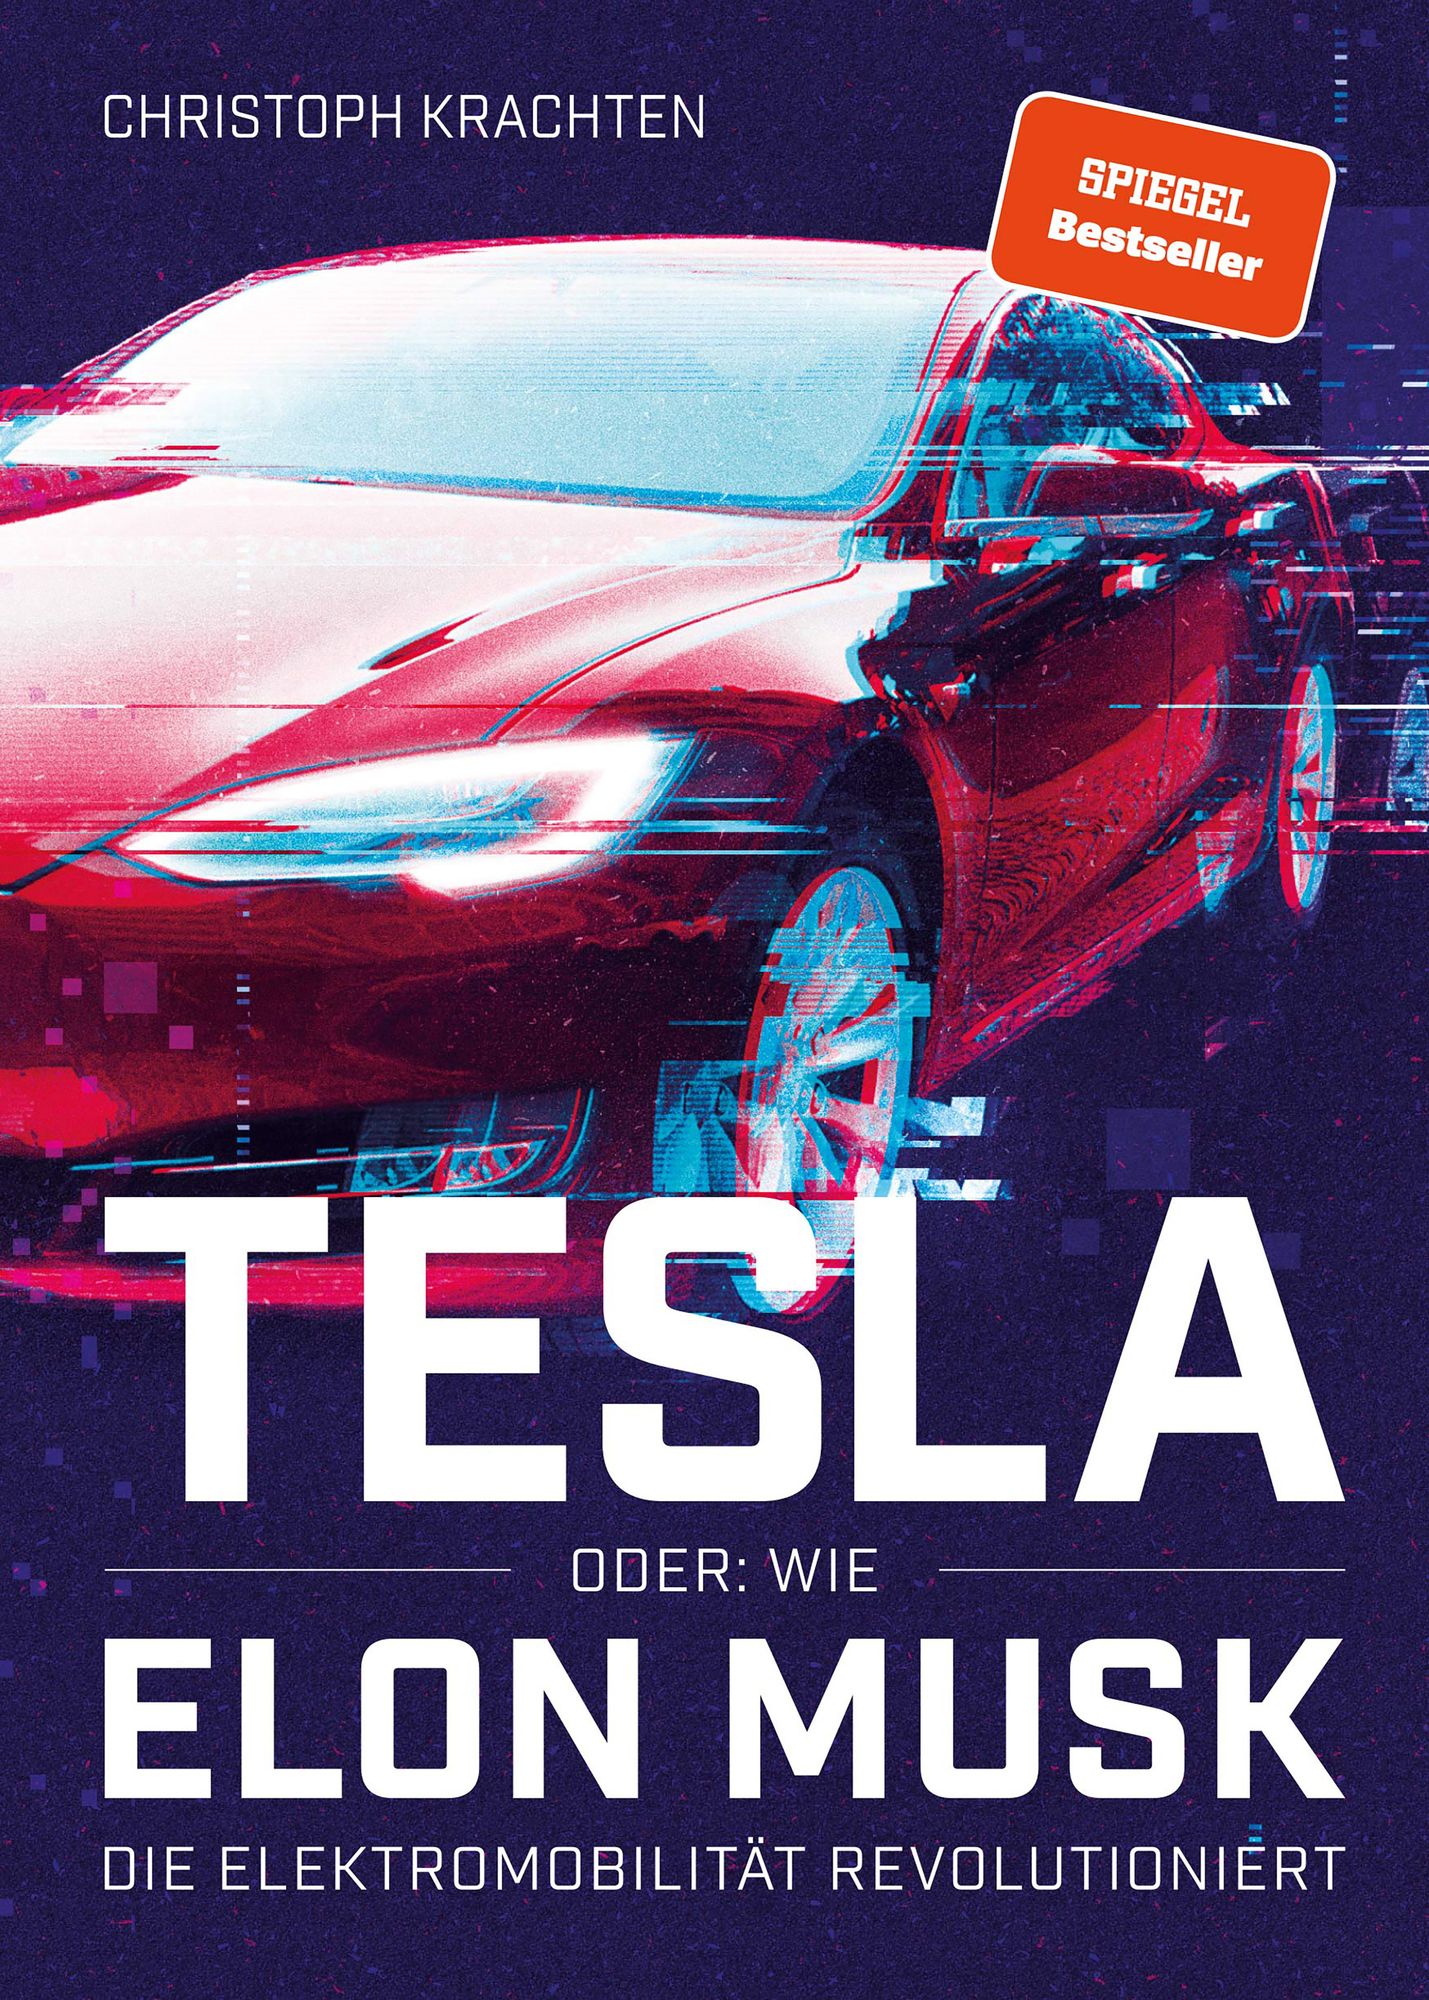 Alle Elektroautos von Tesla im Überblick: Branchen-Revolution oder  überbewertet? - EFAHRER.com